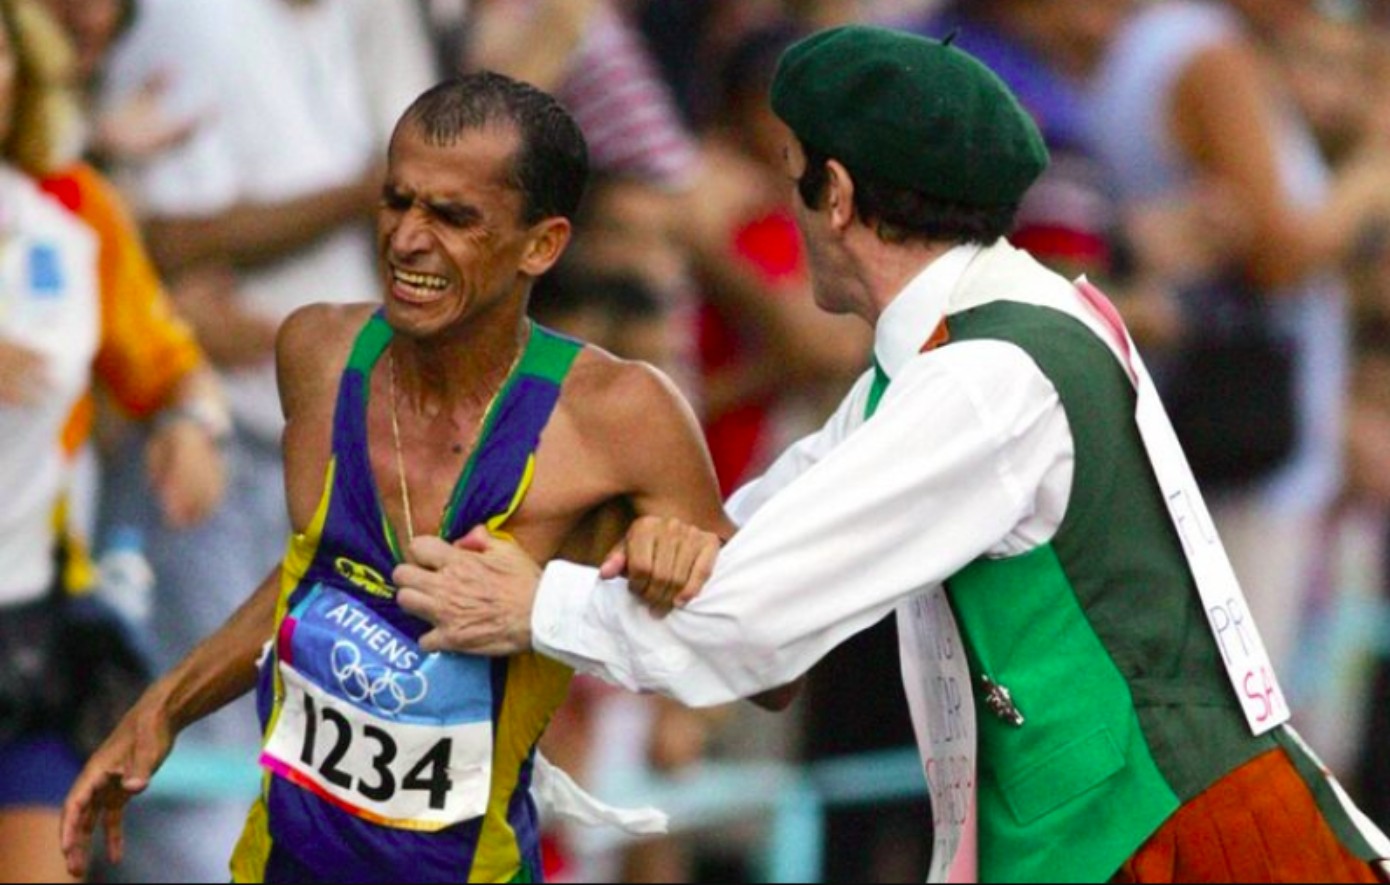 Ολυμπιακοί Αγώνες 2004: Η μέρα που θεατής στέρησε από τον Βαντερλέι ντε Λίμα το χρυσό μετάλλιο στον Μαραθώνιο